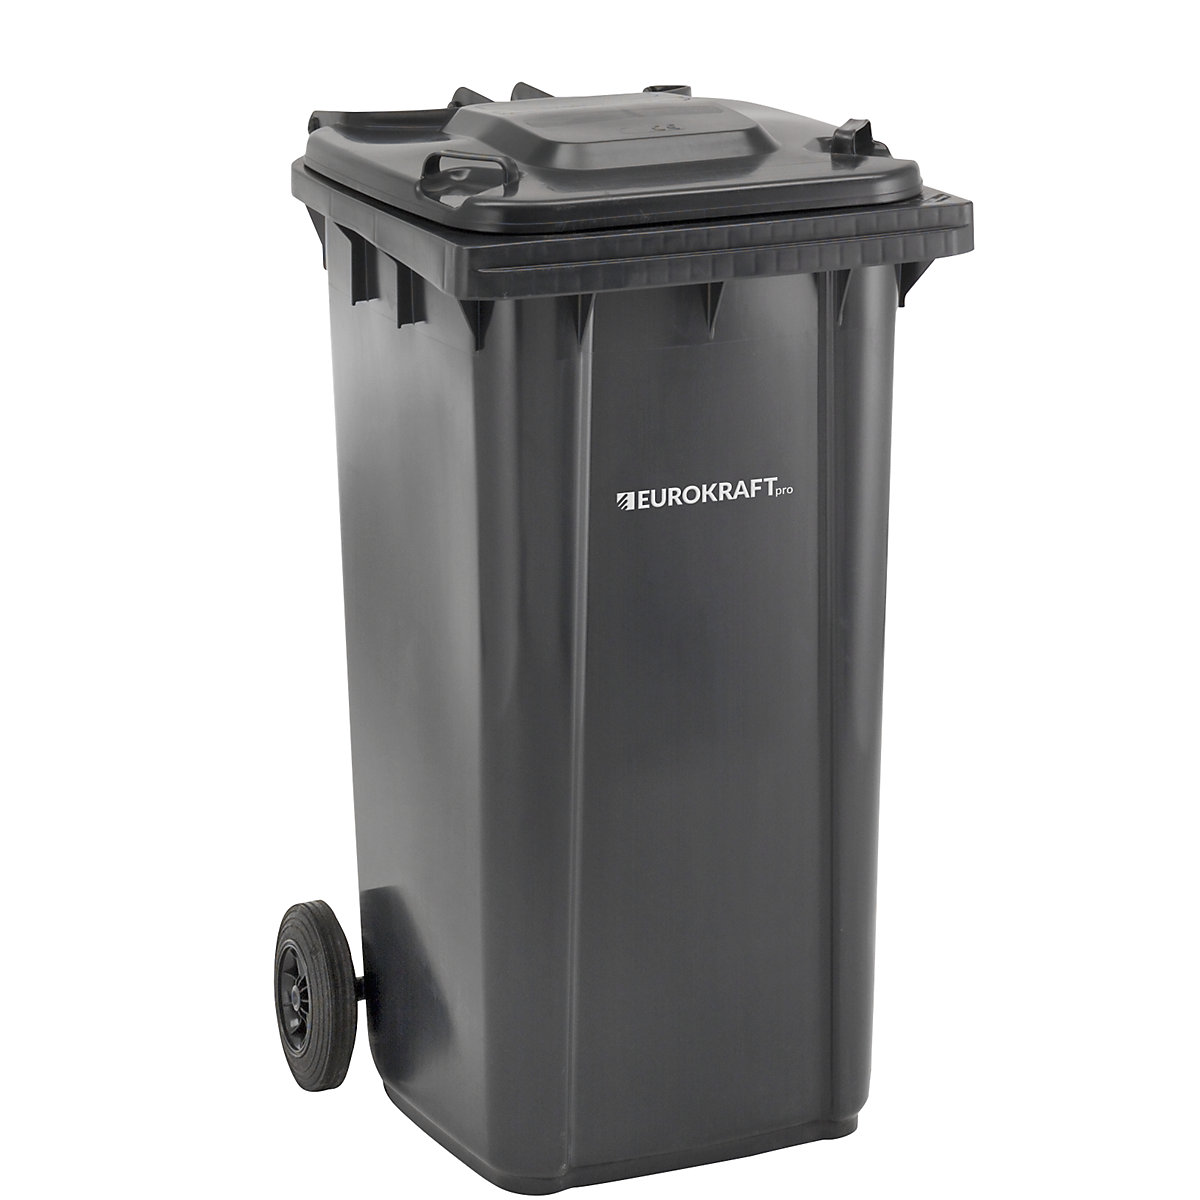 EUROKRAFTpro – Plastic waste bin, DIN EN 840, capacity 240 l, WxHxD 580 x 1100 x 740 mm, charcoal